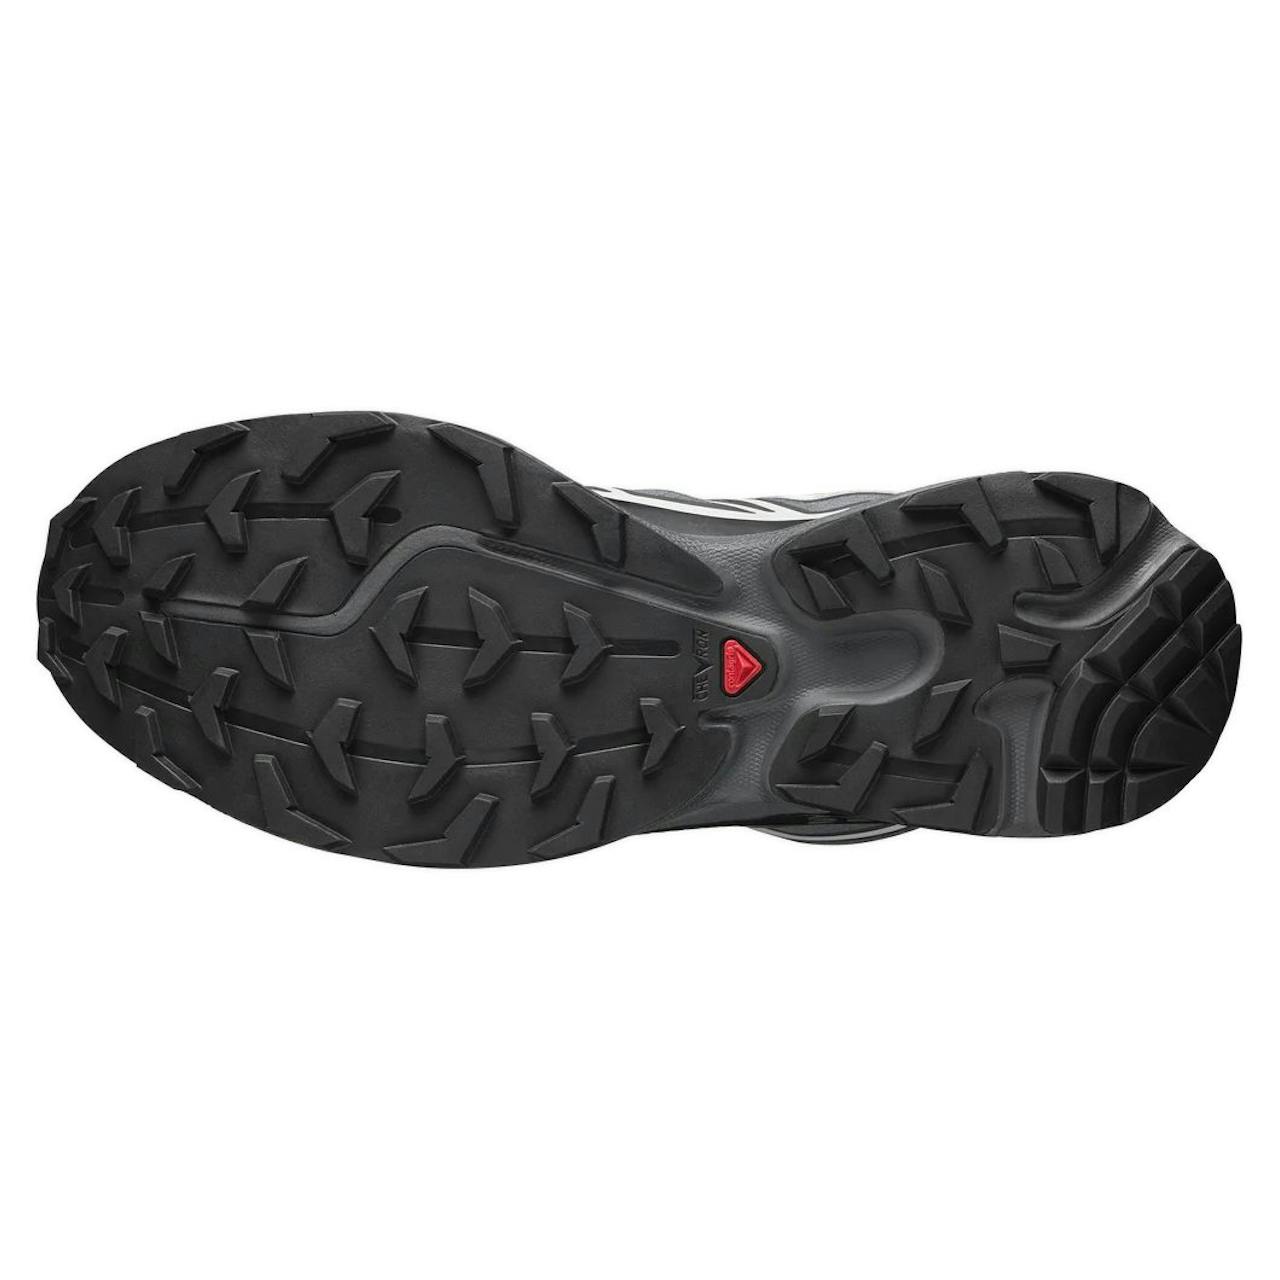 Salomon XT-6 GTX Sneaker - Black/Ebony/Lunar Rock, Trail Sneakers